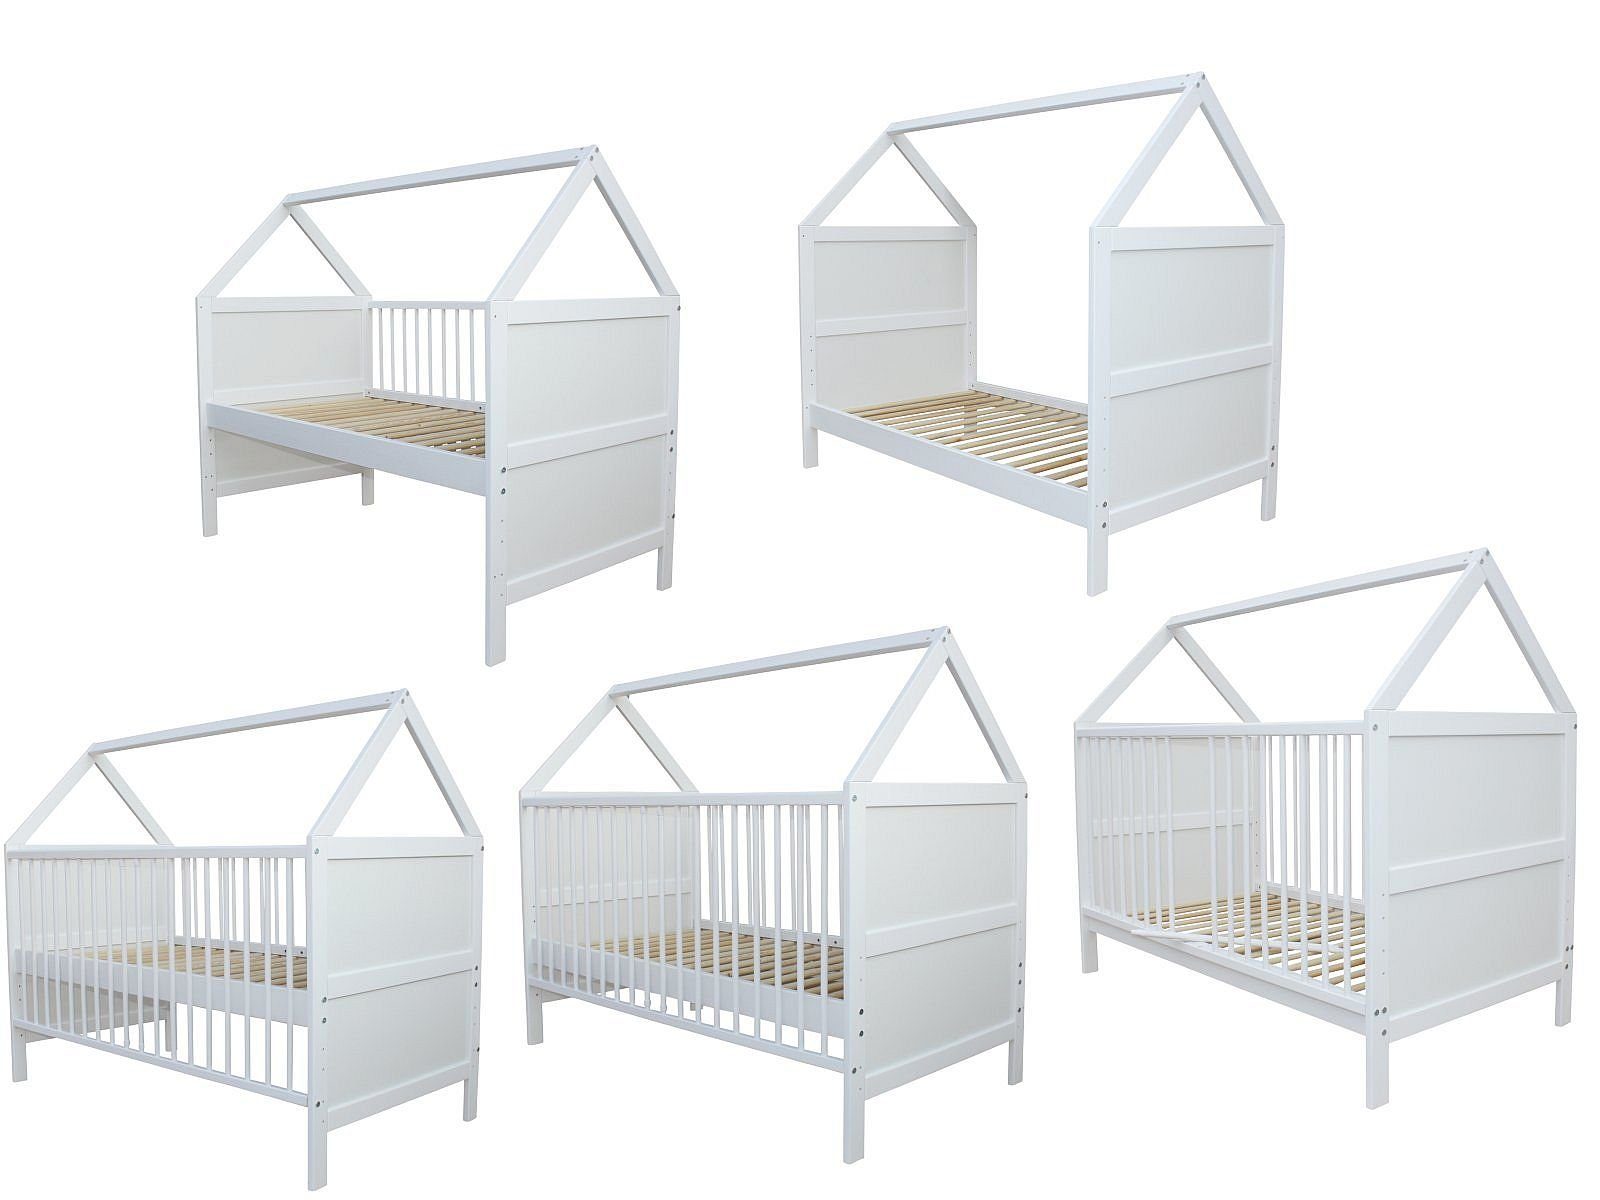 Kinderbett Juniorbett Bett 140x70 cm mit Schutzgitter Schaumstoffmatratze Weiss 